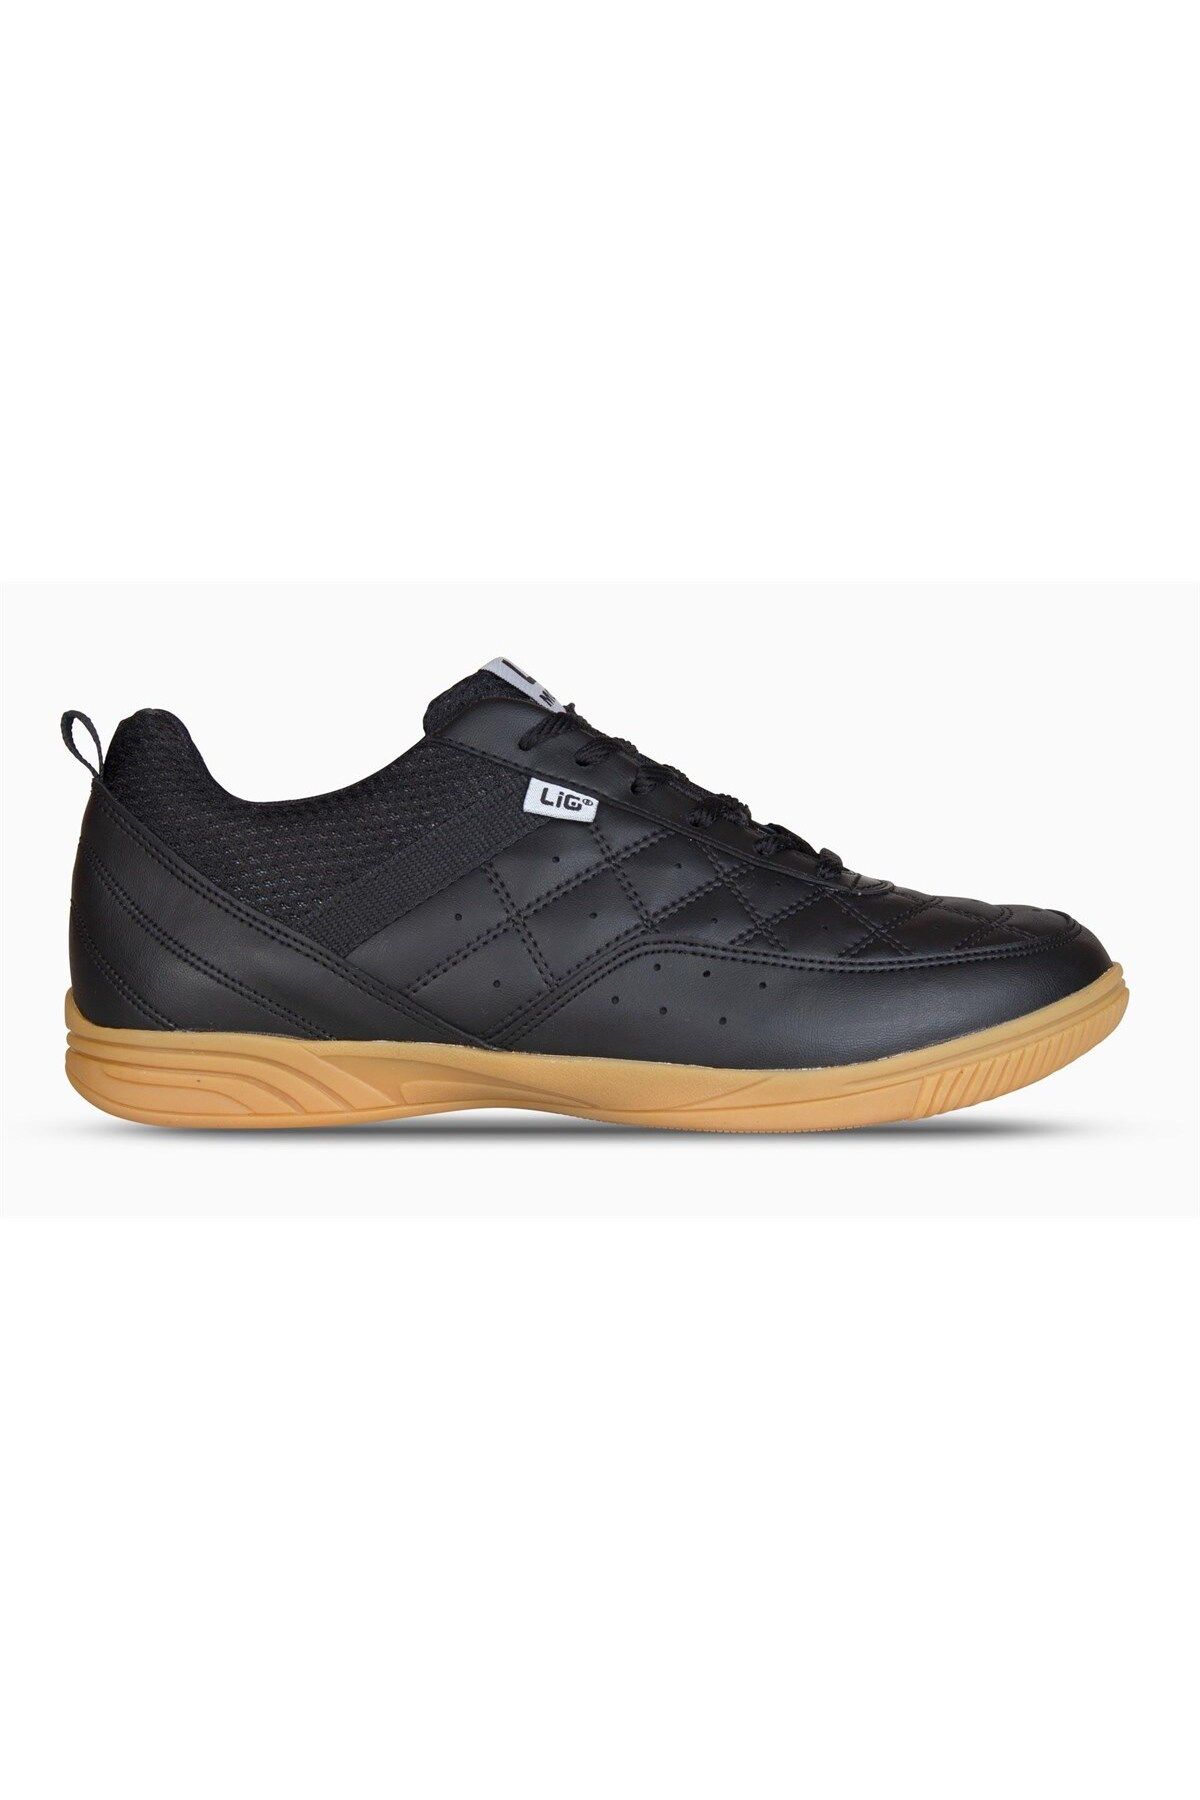 Lig Futsal Ayakkabı Salon Ayakkabısı - Siyah - Monaco G